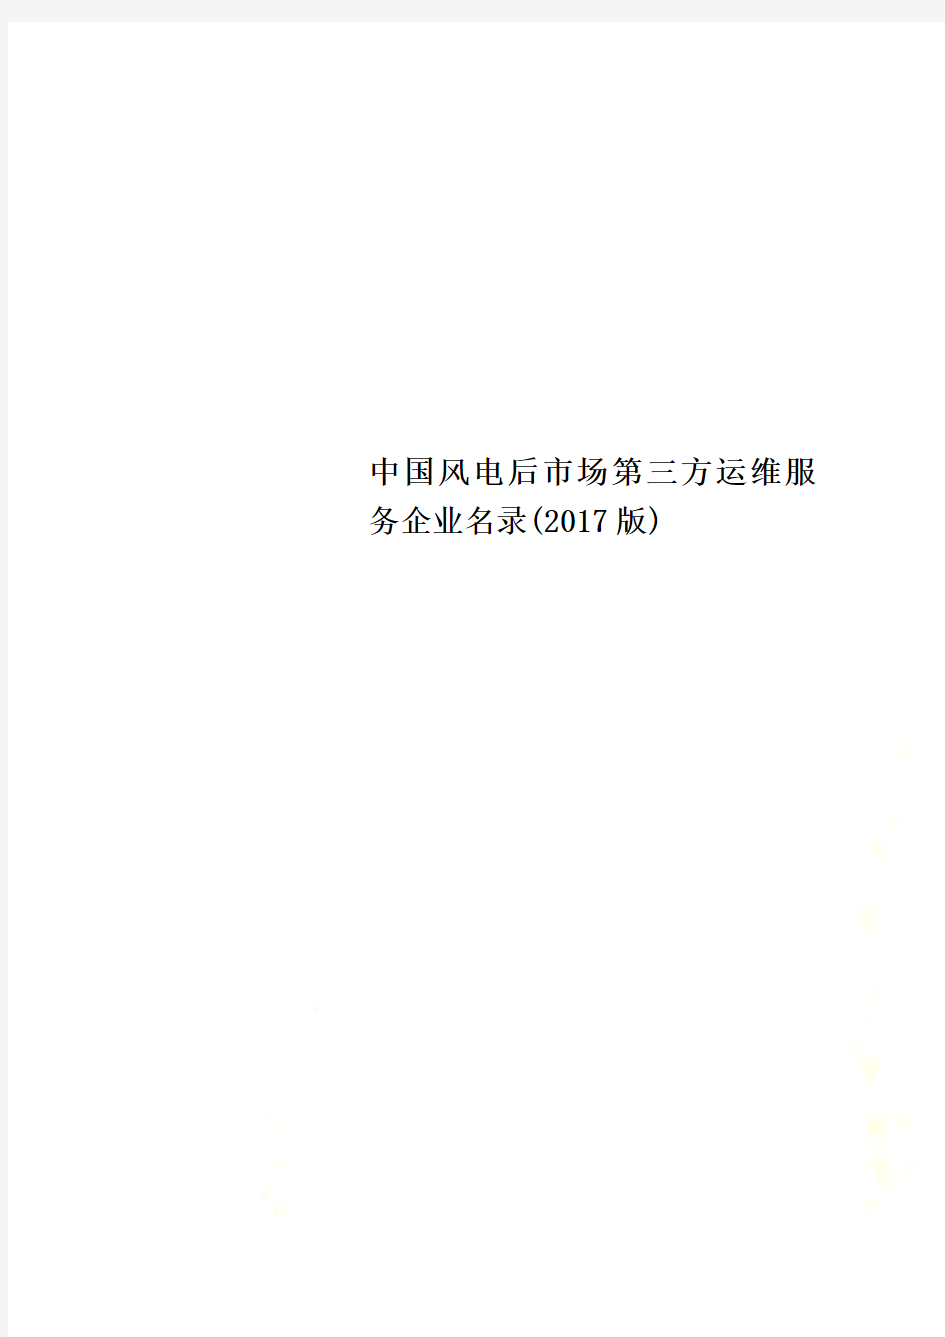 中国风电后市场第三方运维服务企业名录(2017版)